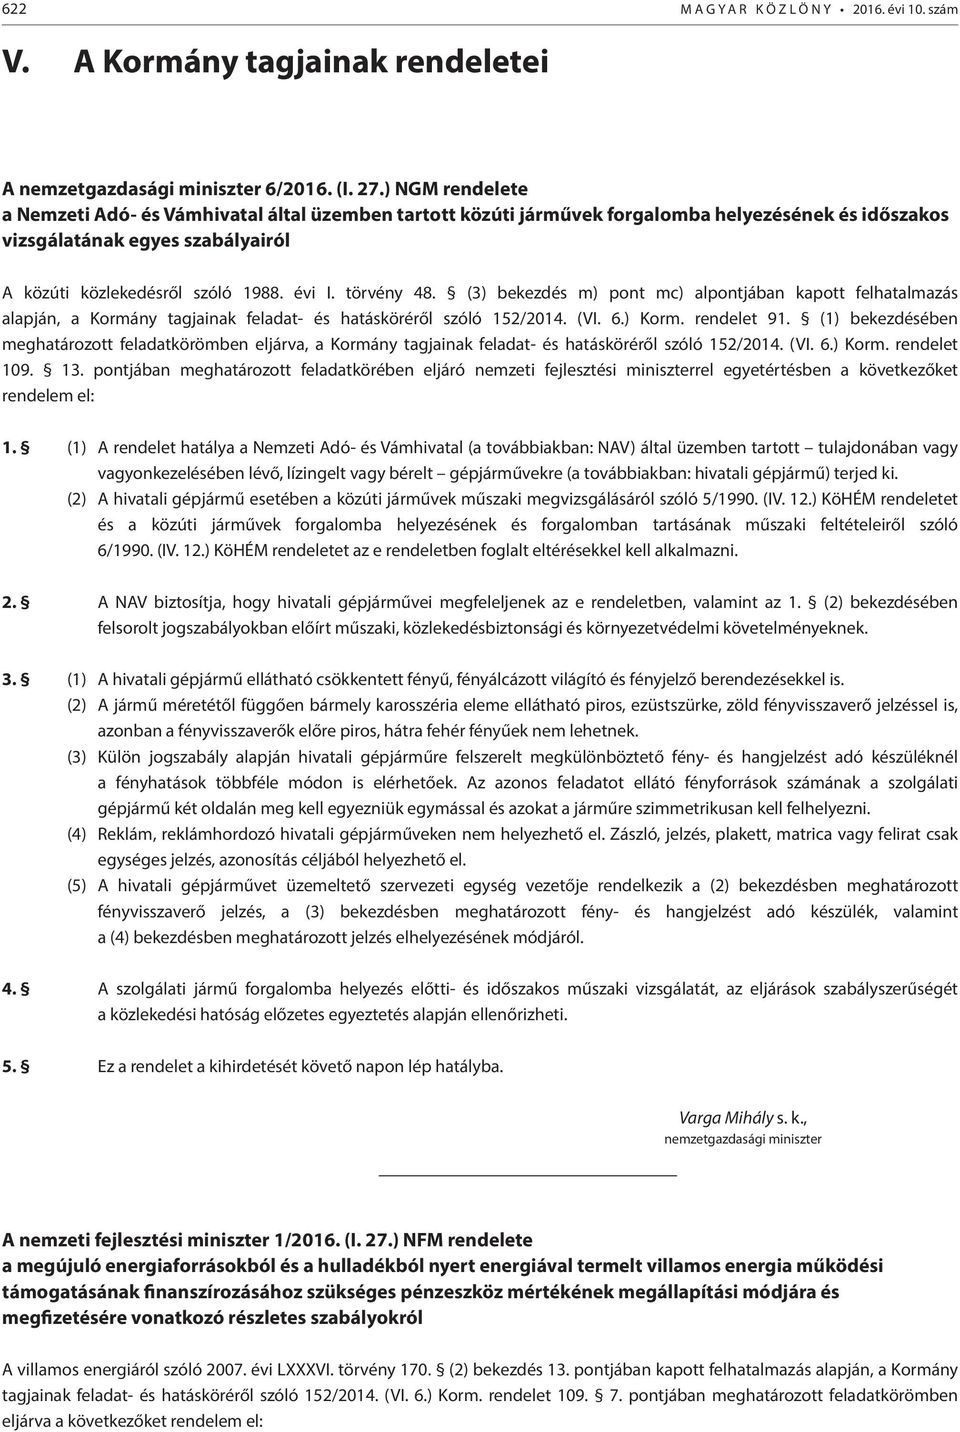 törvény 48. (3) bekezdés m) pont mc) alpontjában kapott felhatalmazás alapján, a Kormány tagjainak feladat- és hatásköréről szóló 152/2014. (VI. 6.) Korm. rendelet 91.